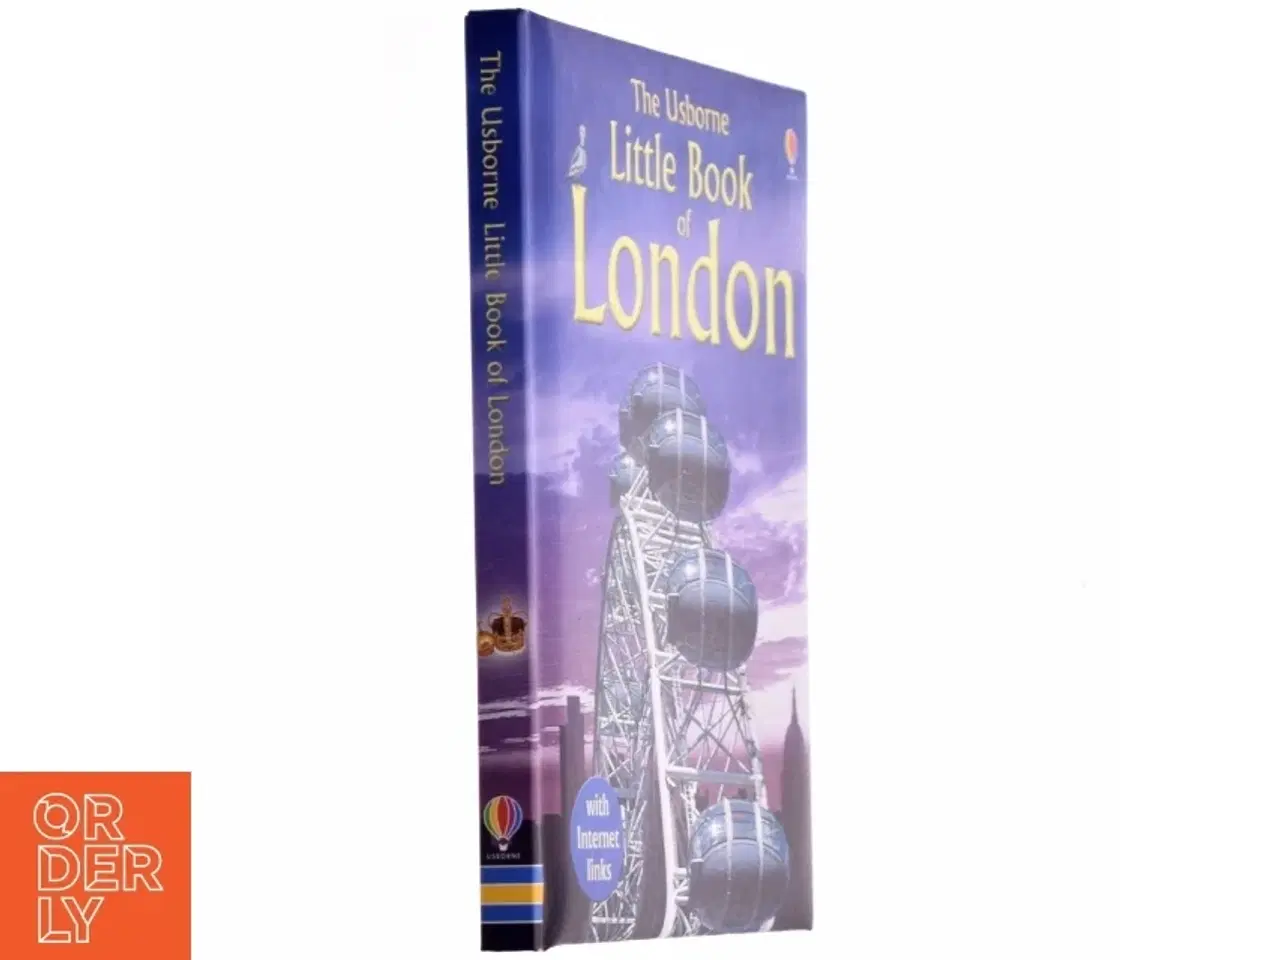 Billede 1 - The Usborne Little Book of London af Rosie Dickins (Bog)